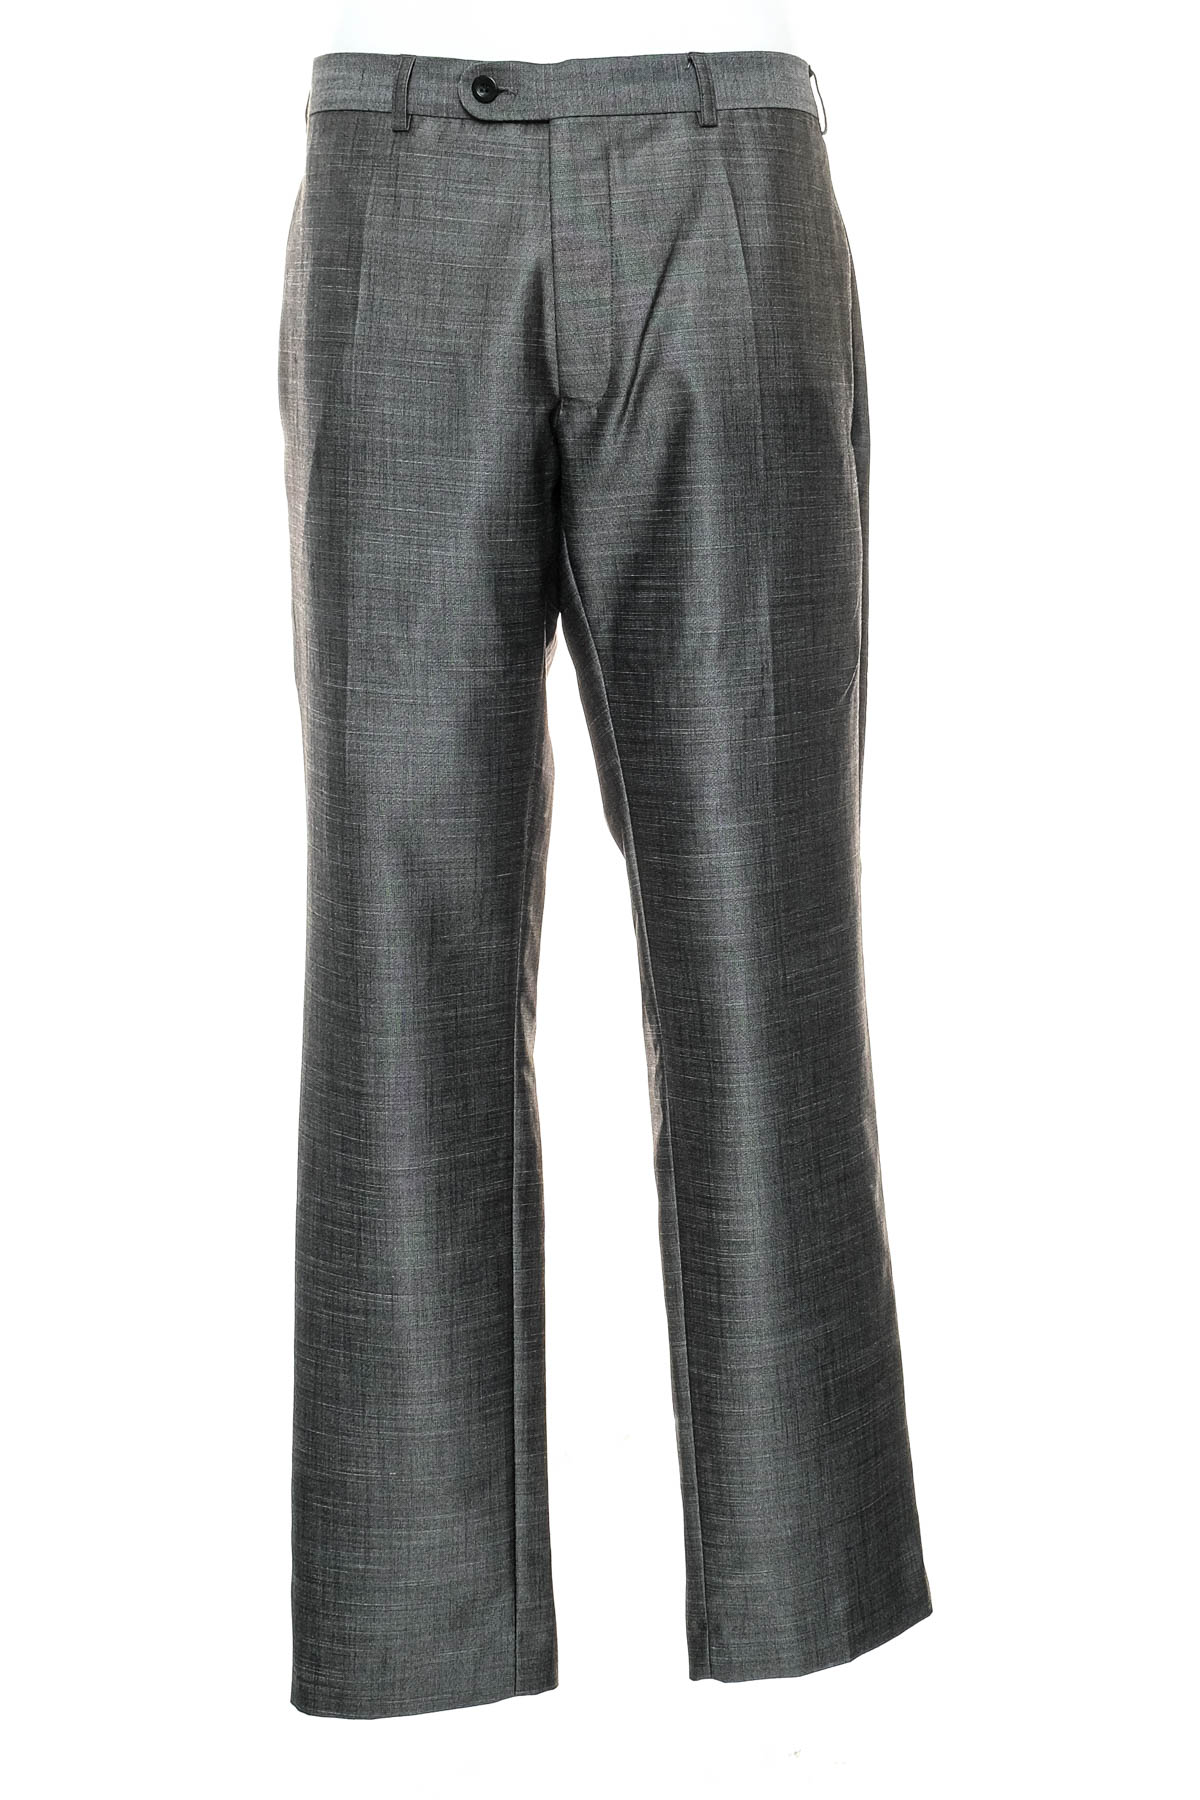 Pantalon pentru bărbați - Remus Uomo - 0